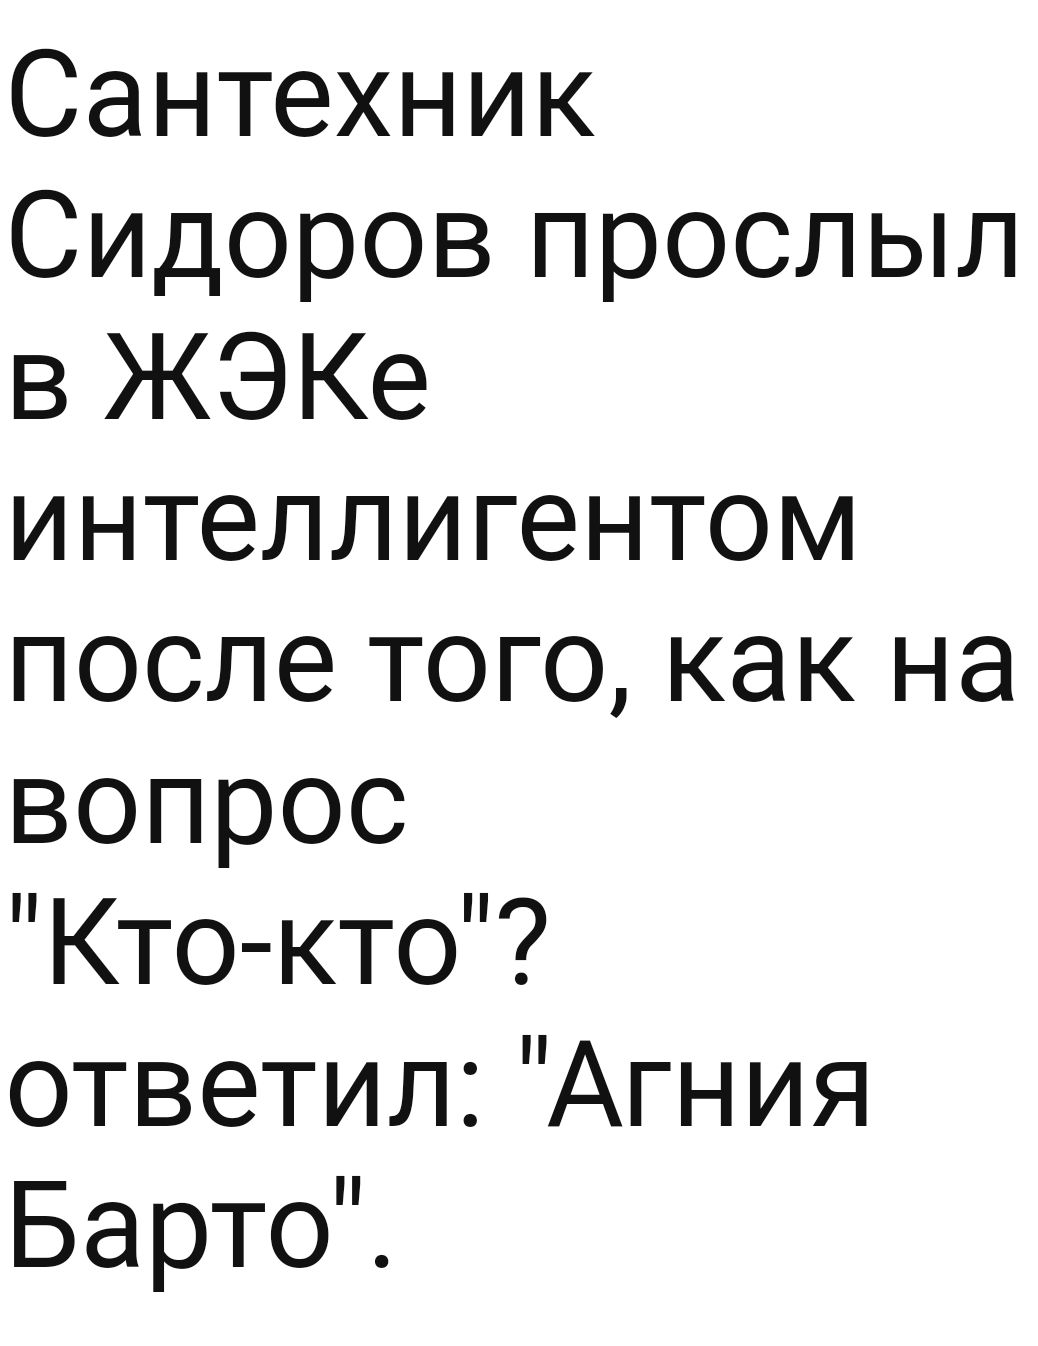 Сантехник Сидоров прослыл в ЖЭКе интеллигентом после того как на вопрос Кто кто ответил Агния БартоЙ